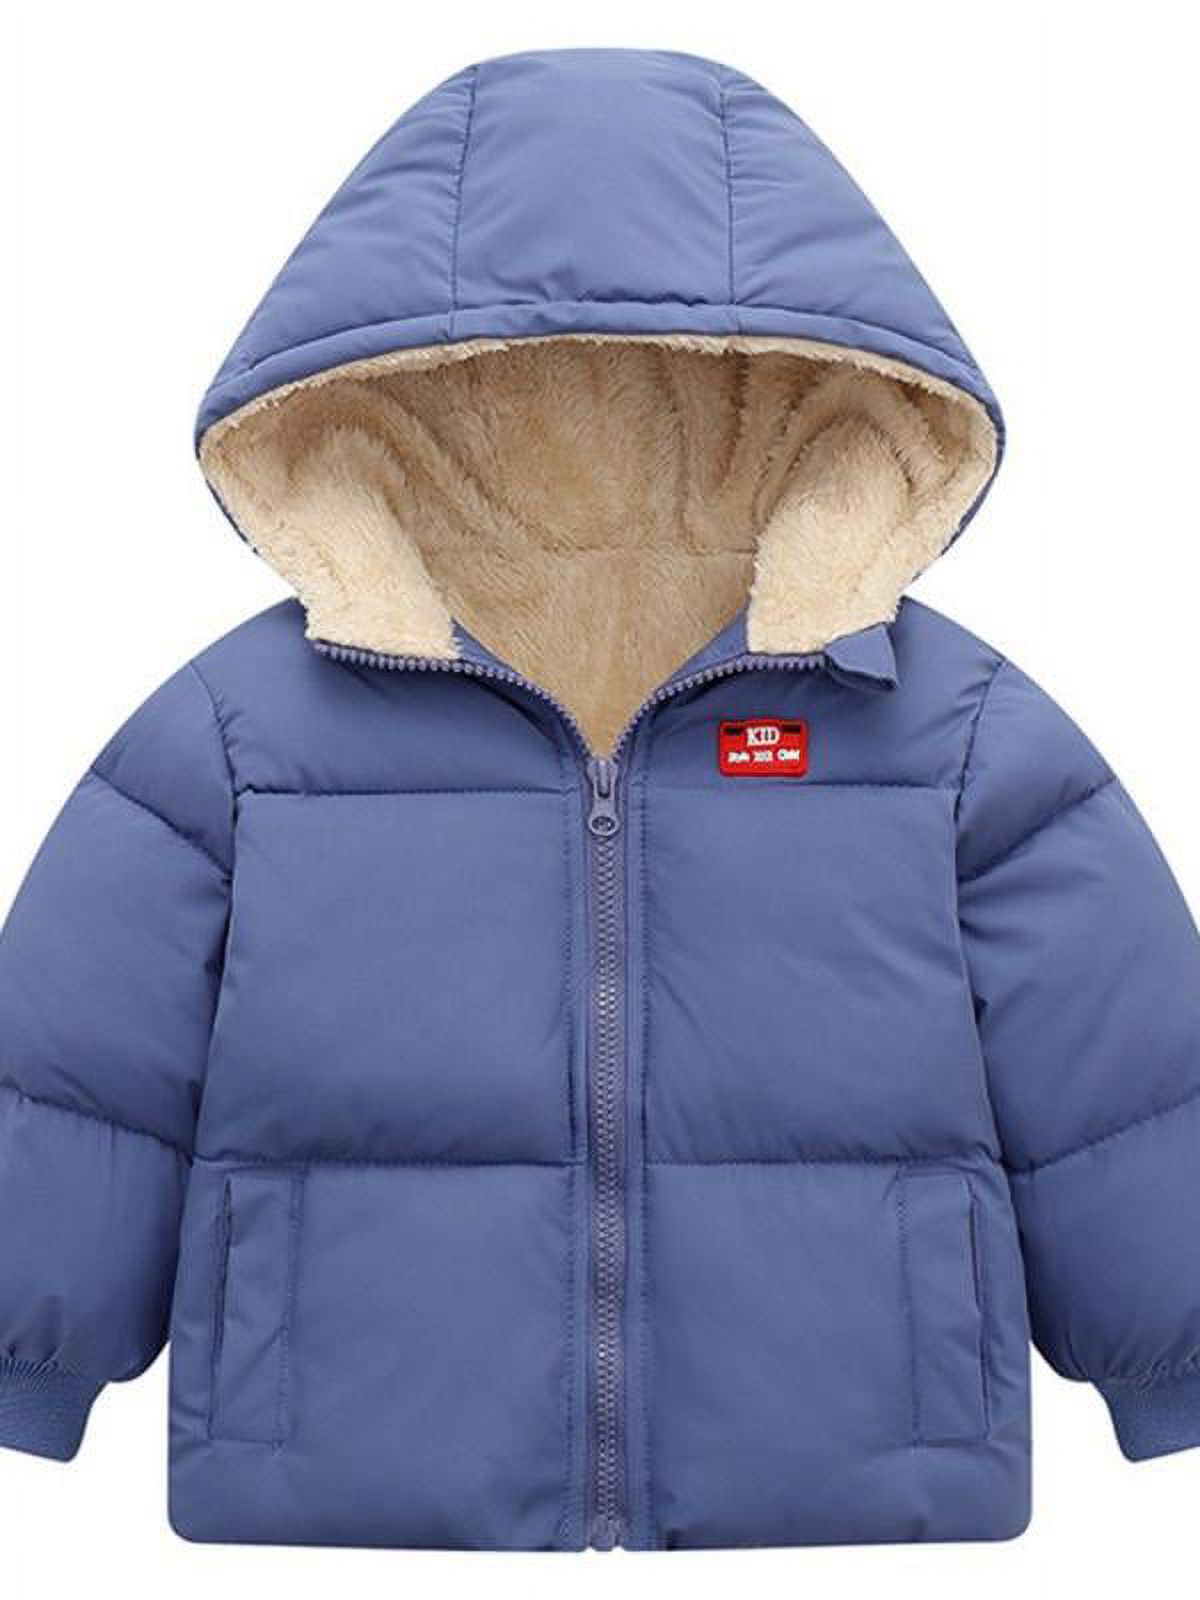 Topumt Boys Girls Hooded Down Jacket Winter Warm Fleece Coat Windproof Zipper Puffer Outerwear 1-6T - image 1 of 3